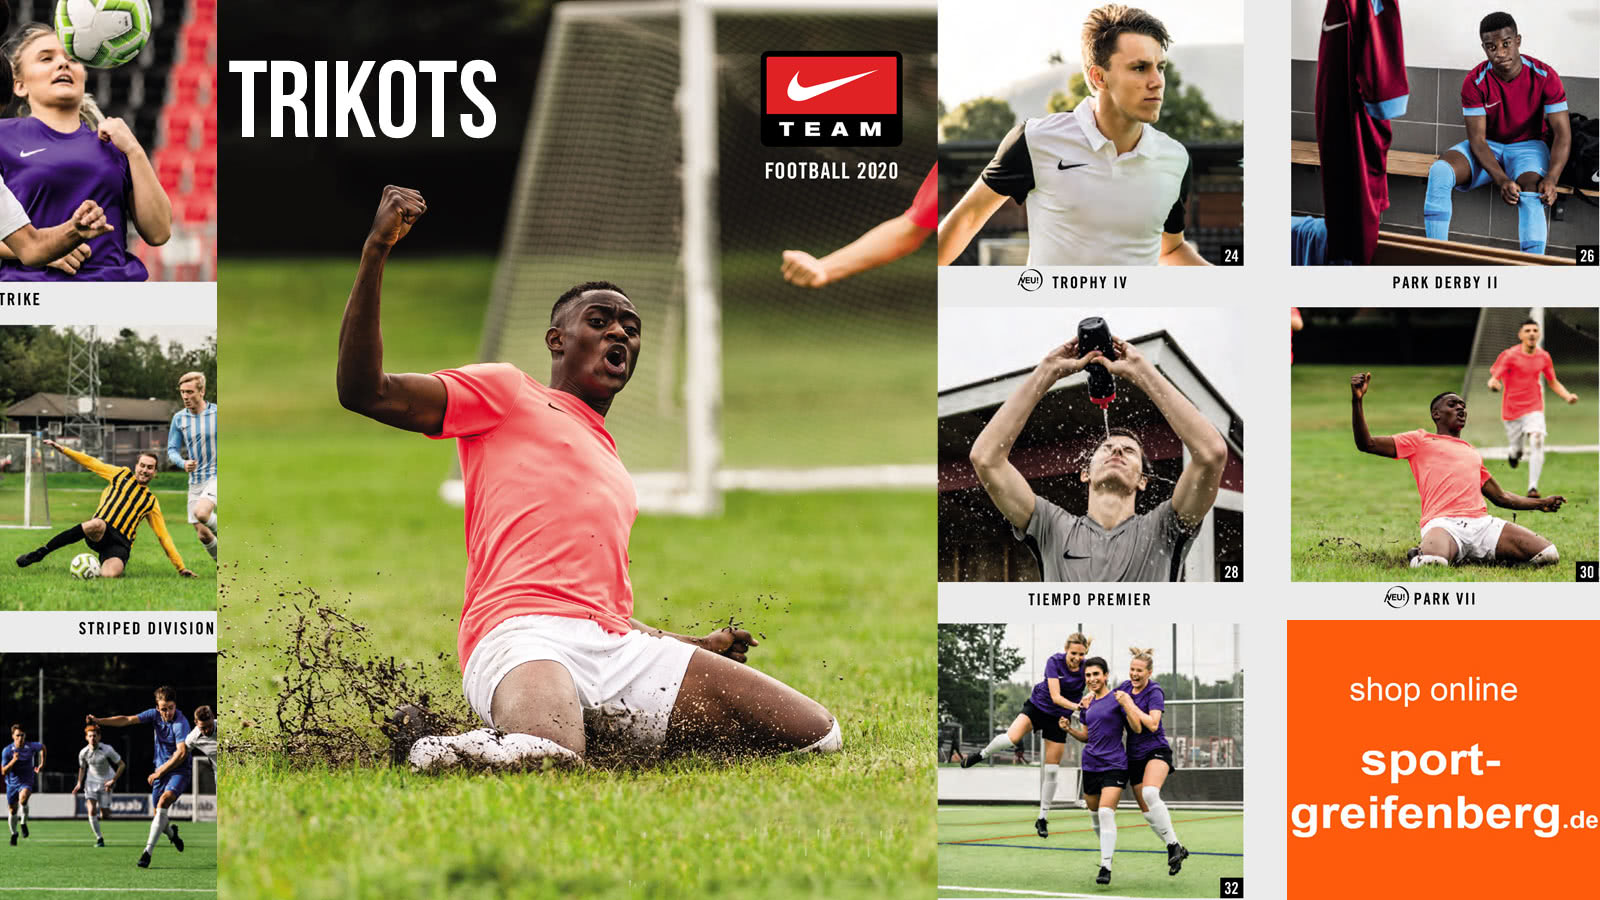 Download Nike Katalog 2020/2021 | Fußball | Teamwear | PDF download ...